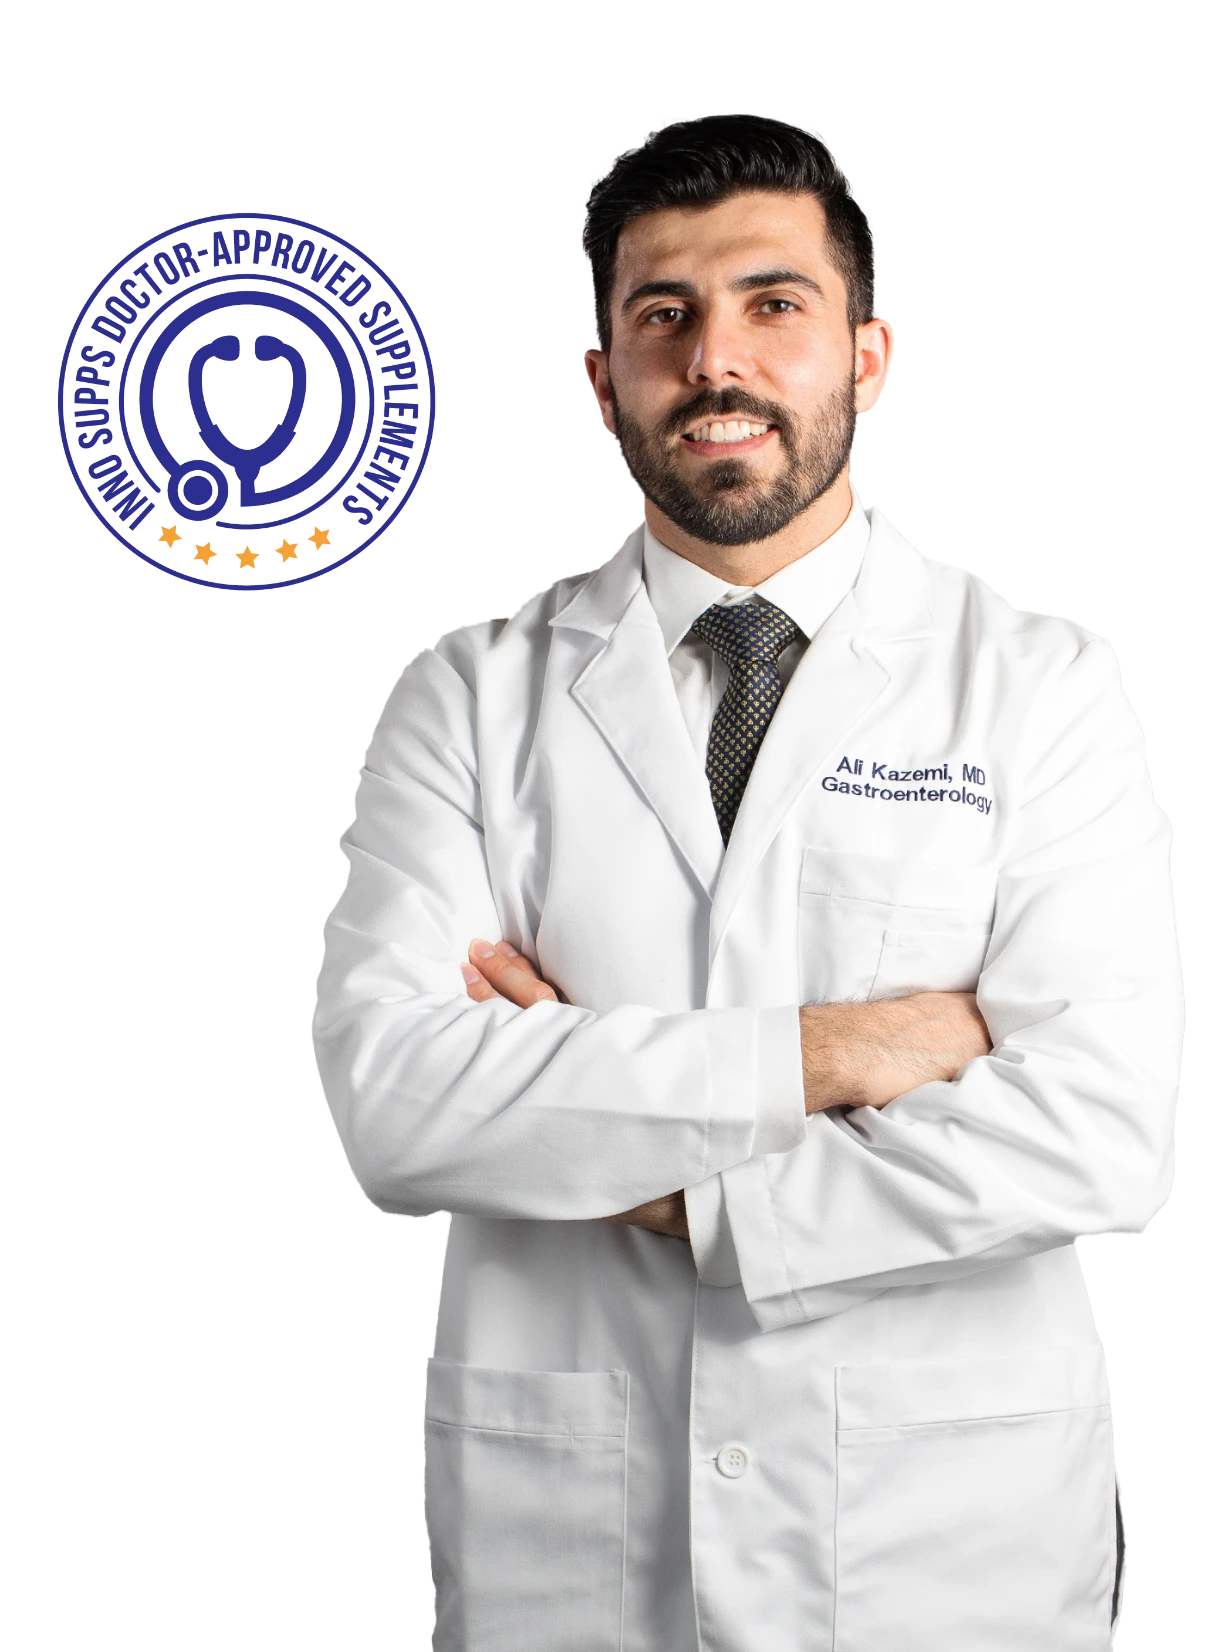 Dr. Kazemi